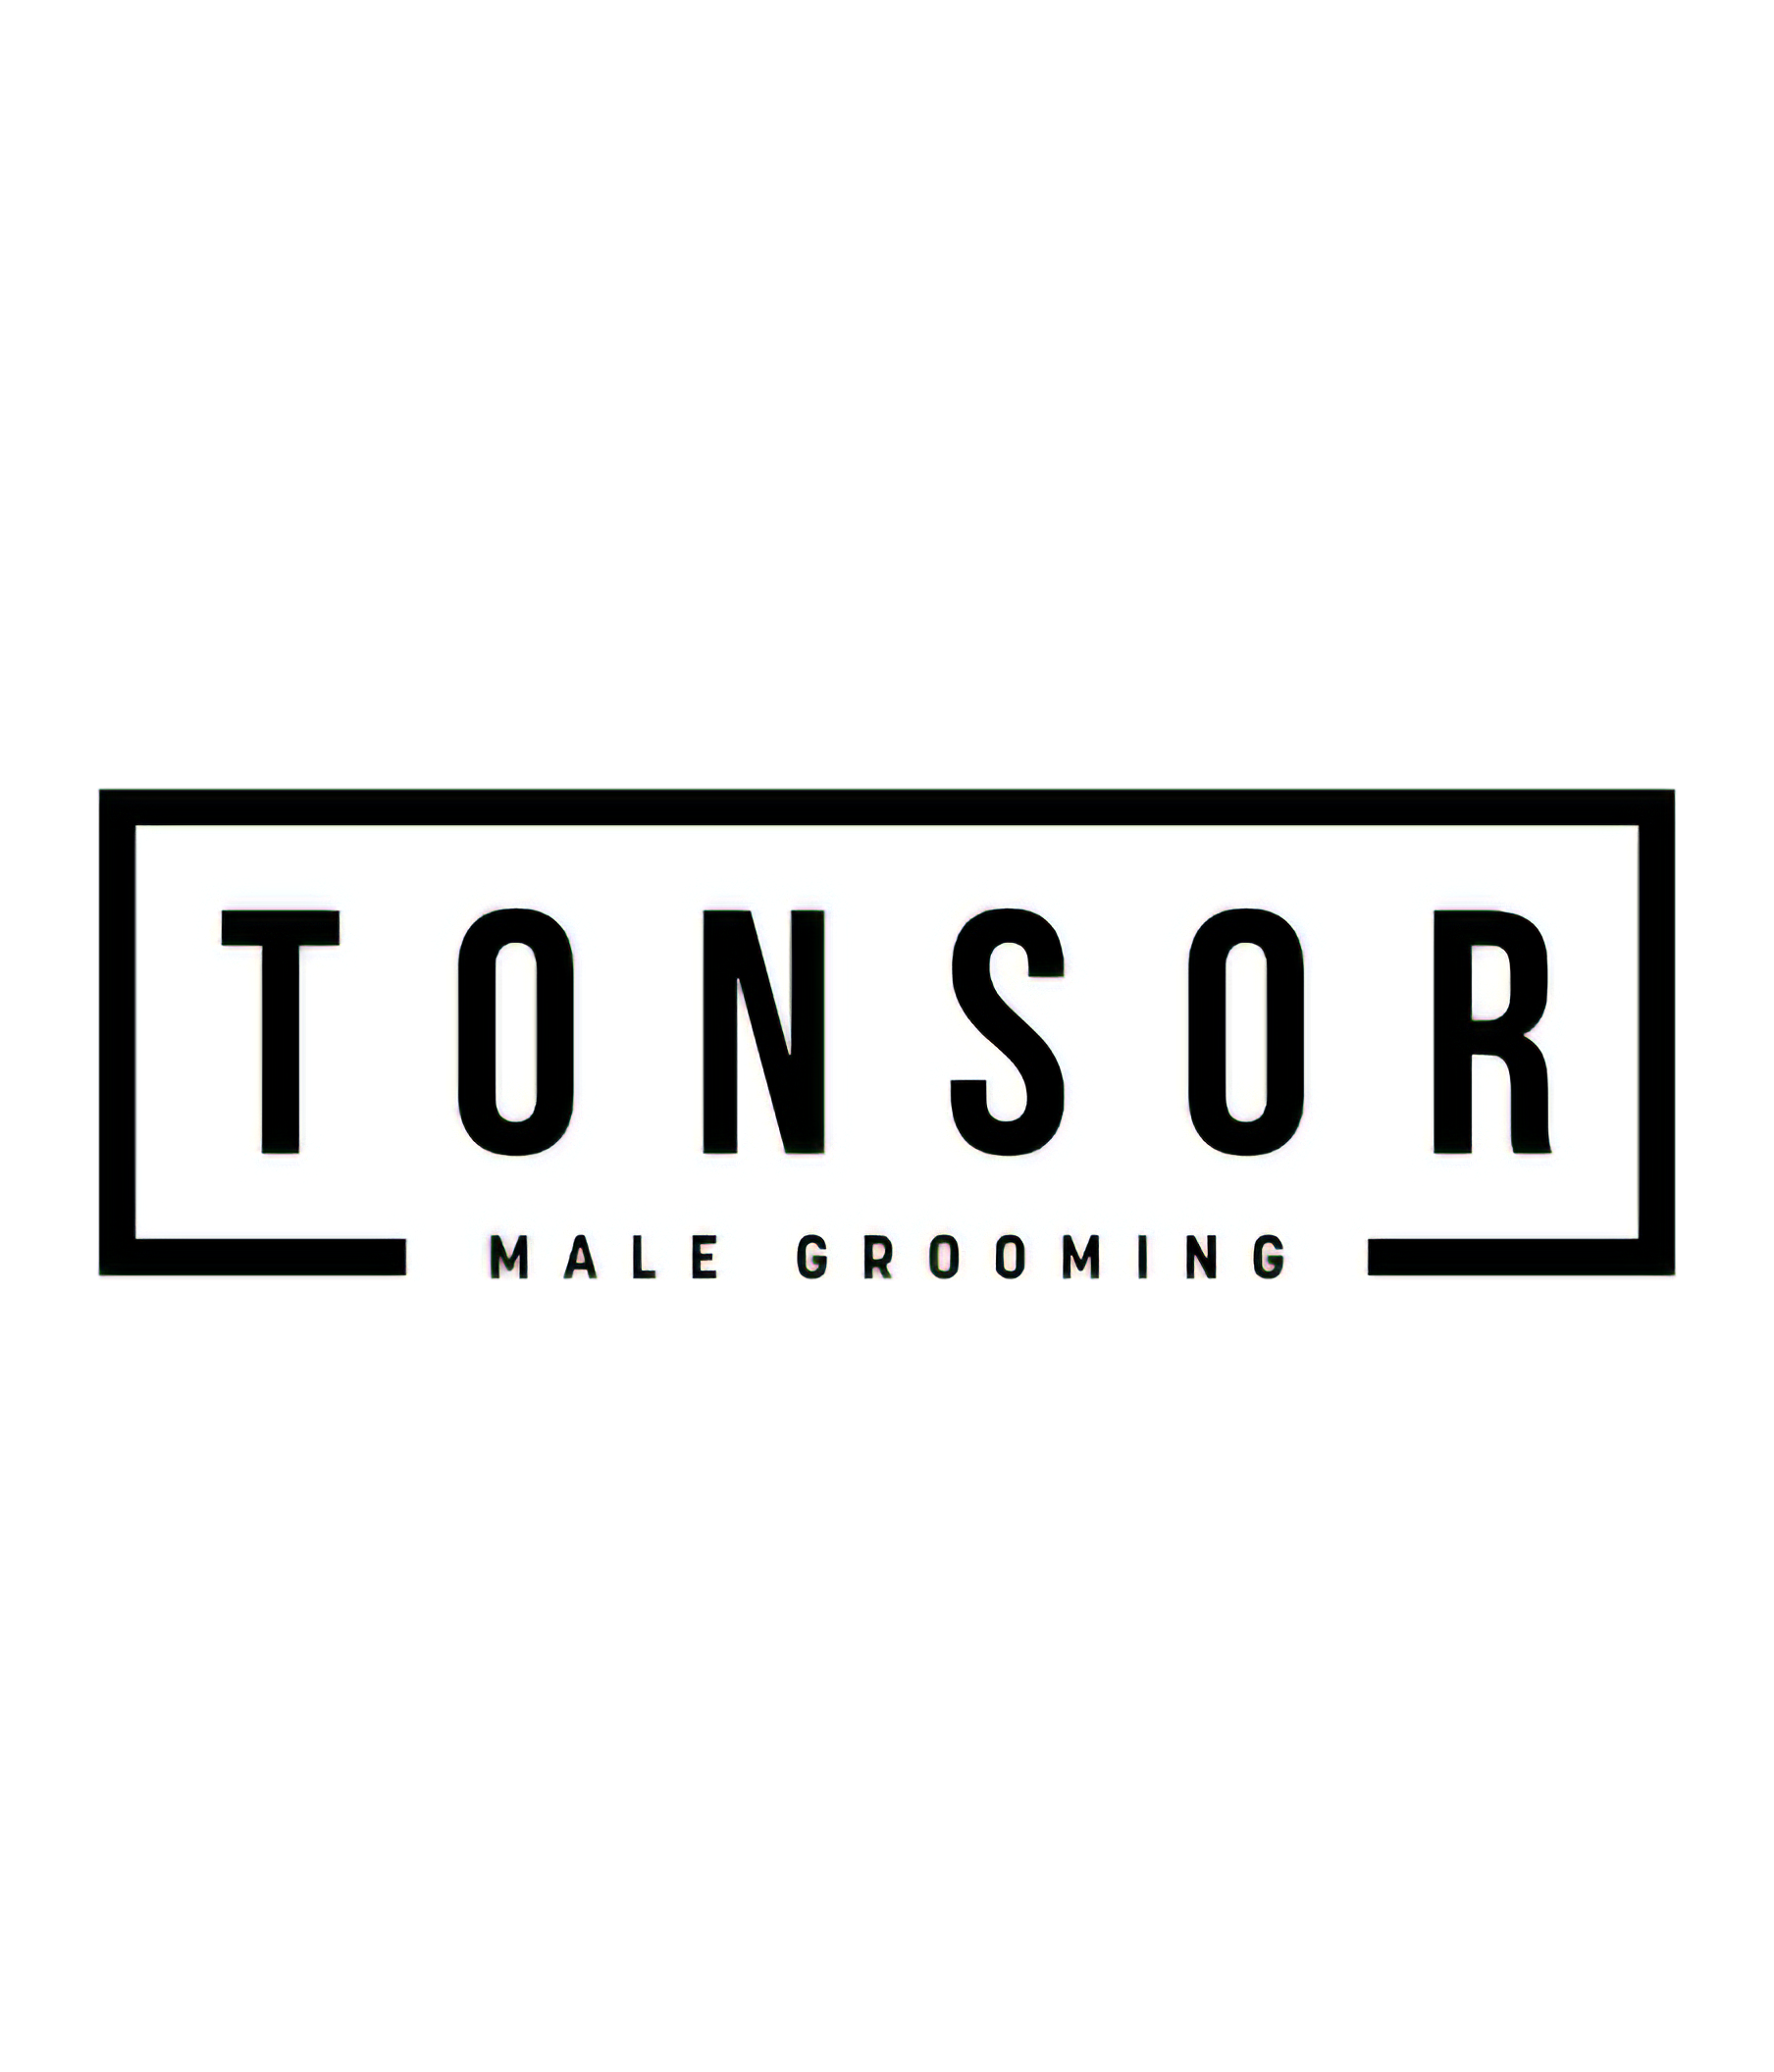 Tonsor